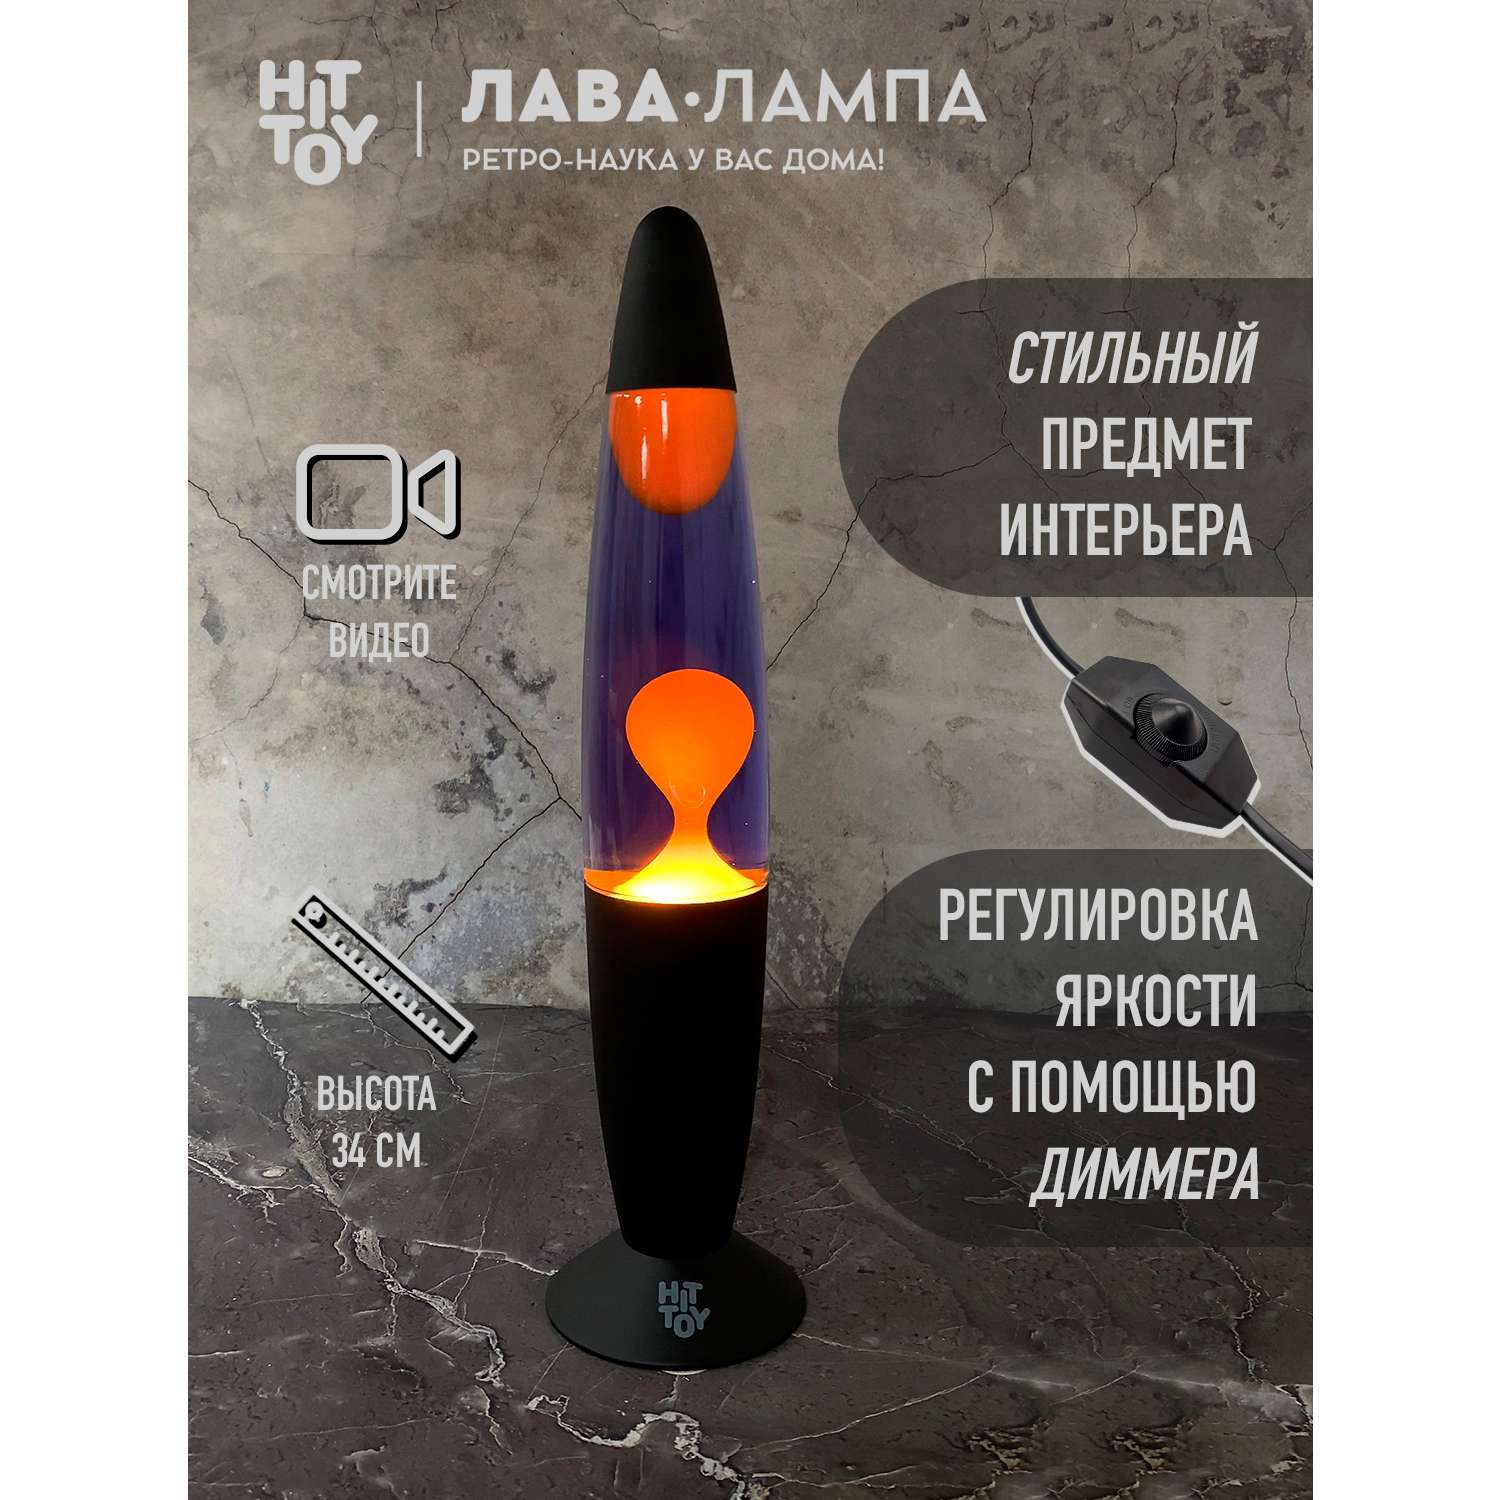 Светильник HitToy Лава-лампа черный корпус 34 см Фиолетовый/Оранжевый - фото 4